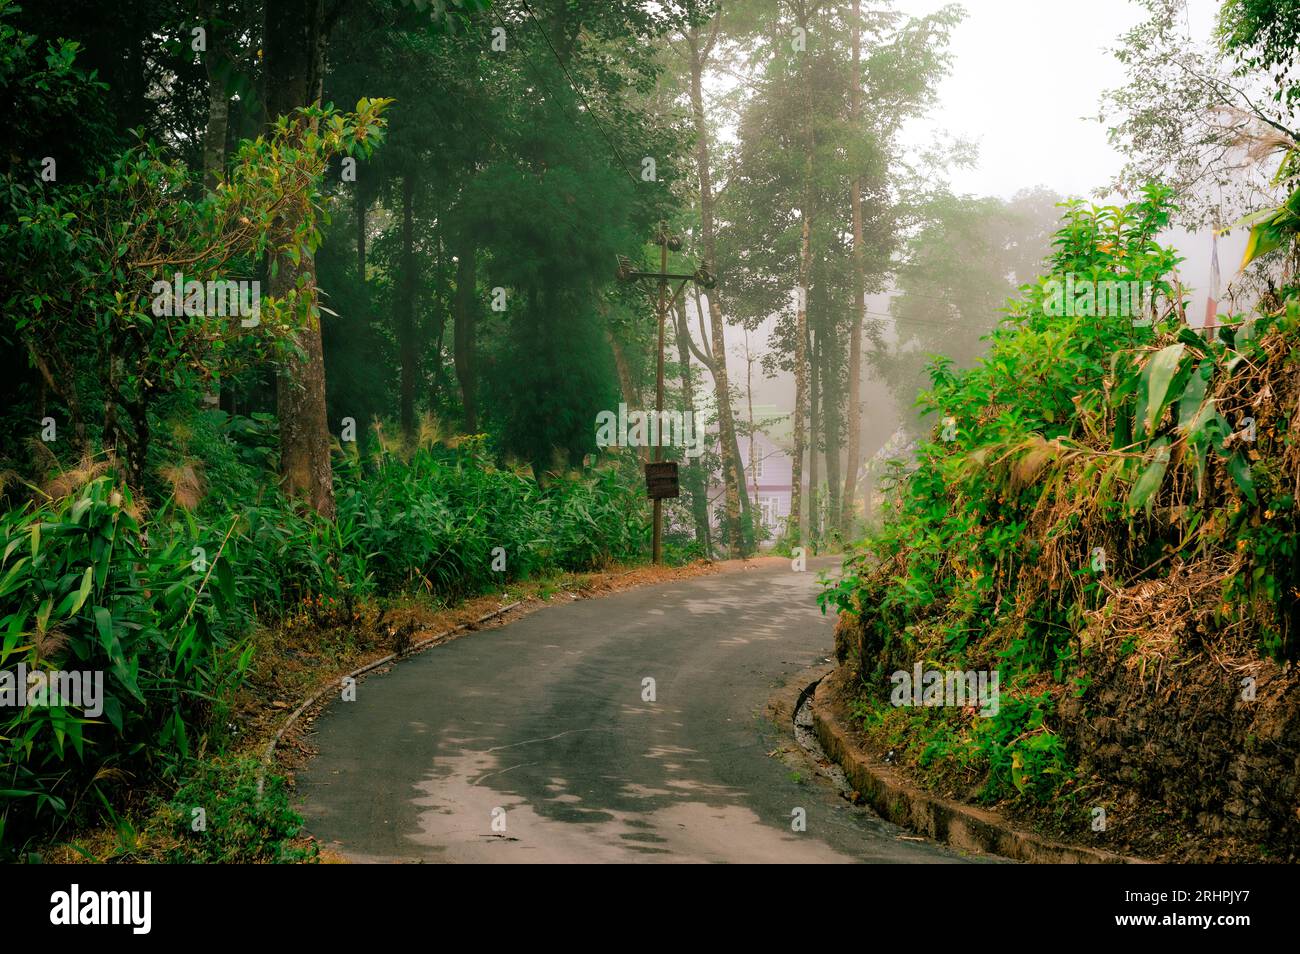 Eine asphaltierte Bergstraße, die bergauf durch den Wald führt. Sonnenlicht bei Sonnenuntergang. Hintergrund Querformat. Tagda Mirik Darjeeling Westbengalen Indien Südasien Pacif Stockfoto